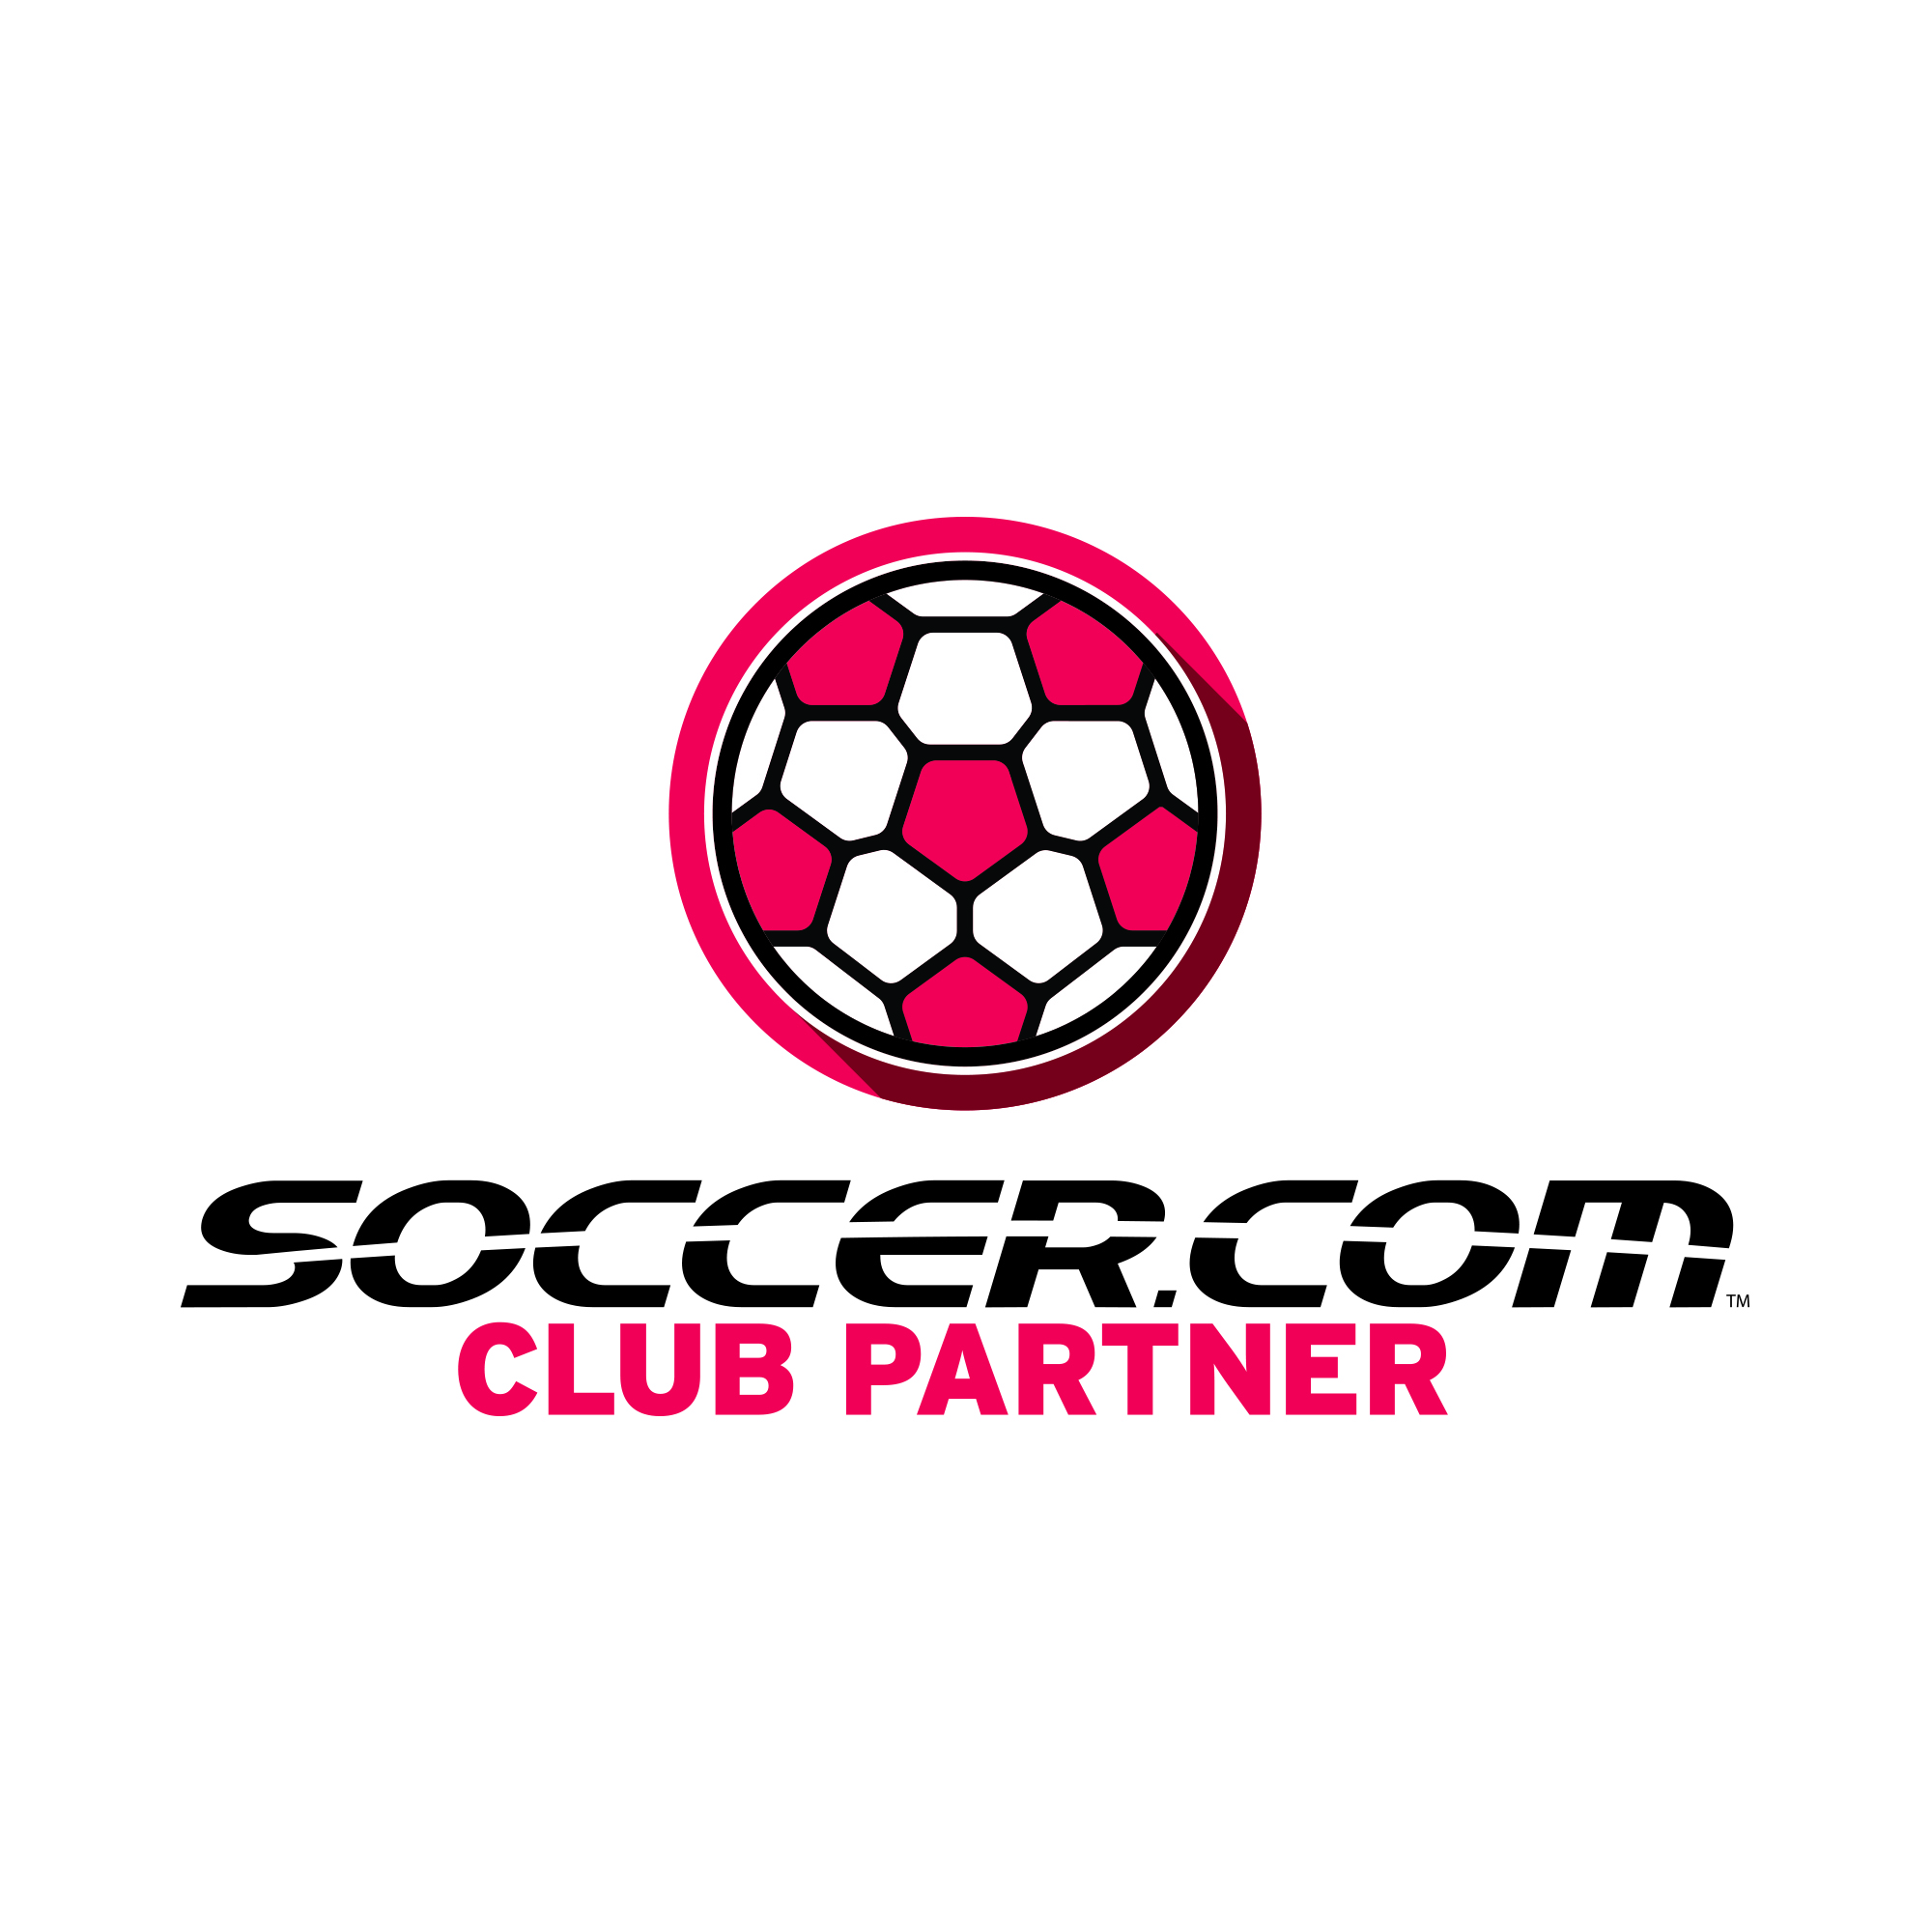 Soccer.com logo.